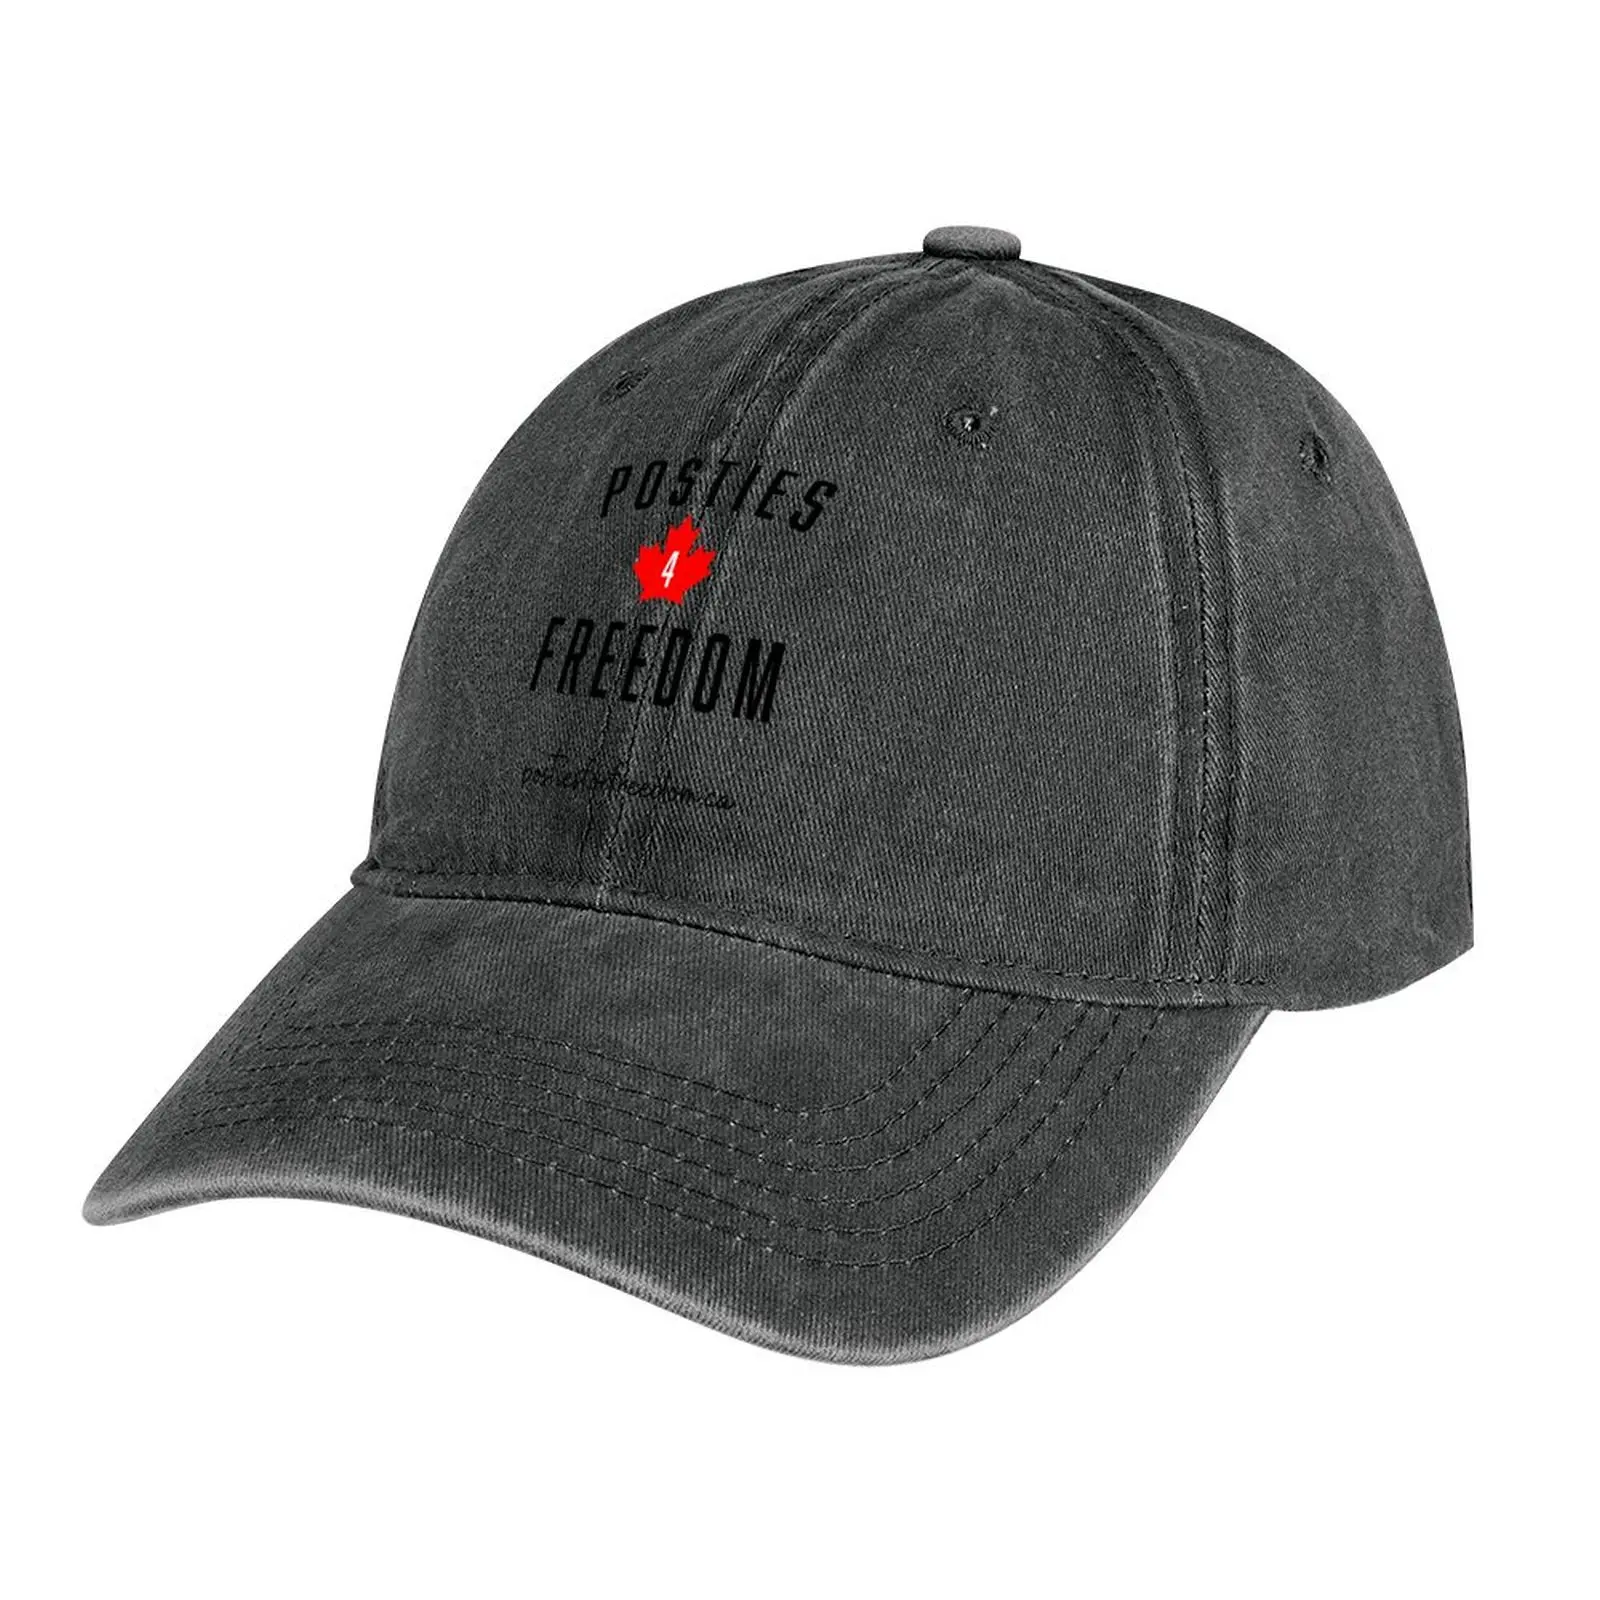 

Ковбойская шляпа Posties 4 Freedom, рыболовная шляпа, мужская шляпа на заказ, женские шляпы